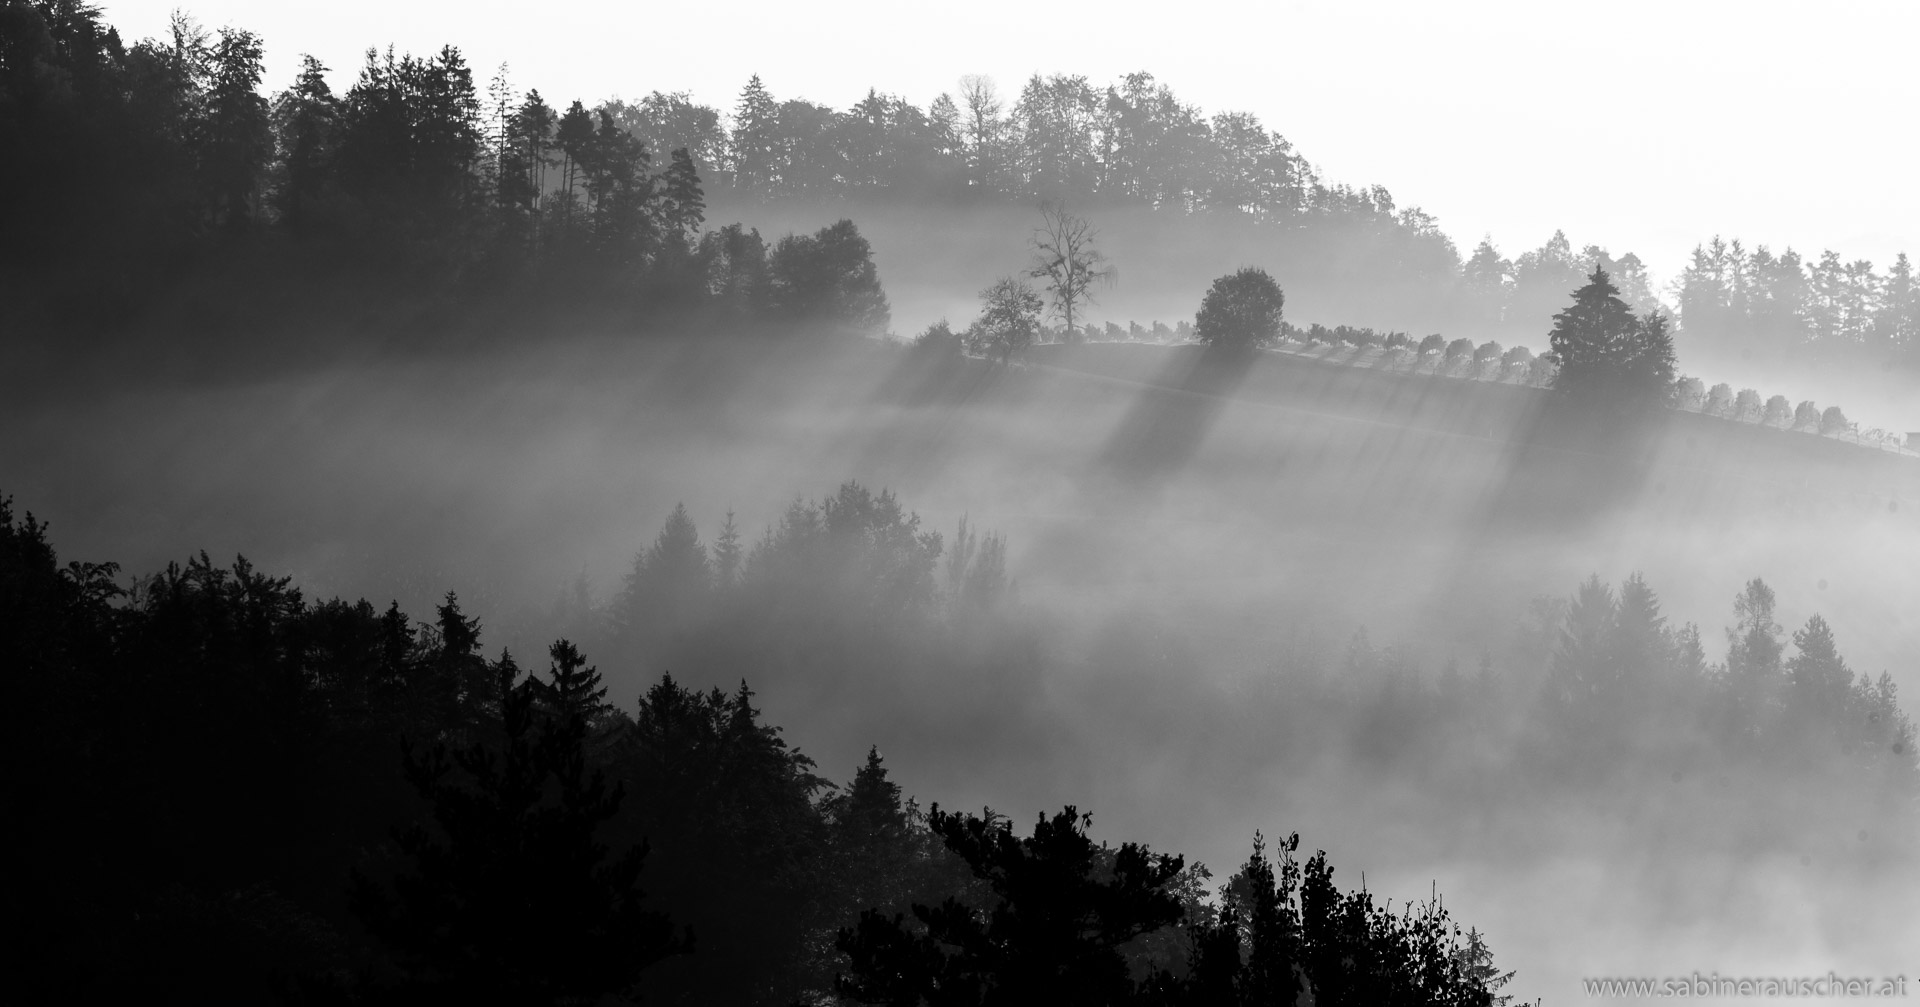 morning light and mist in the vineyard | Morgenlicht und Nebel im Weinberg